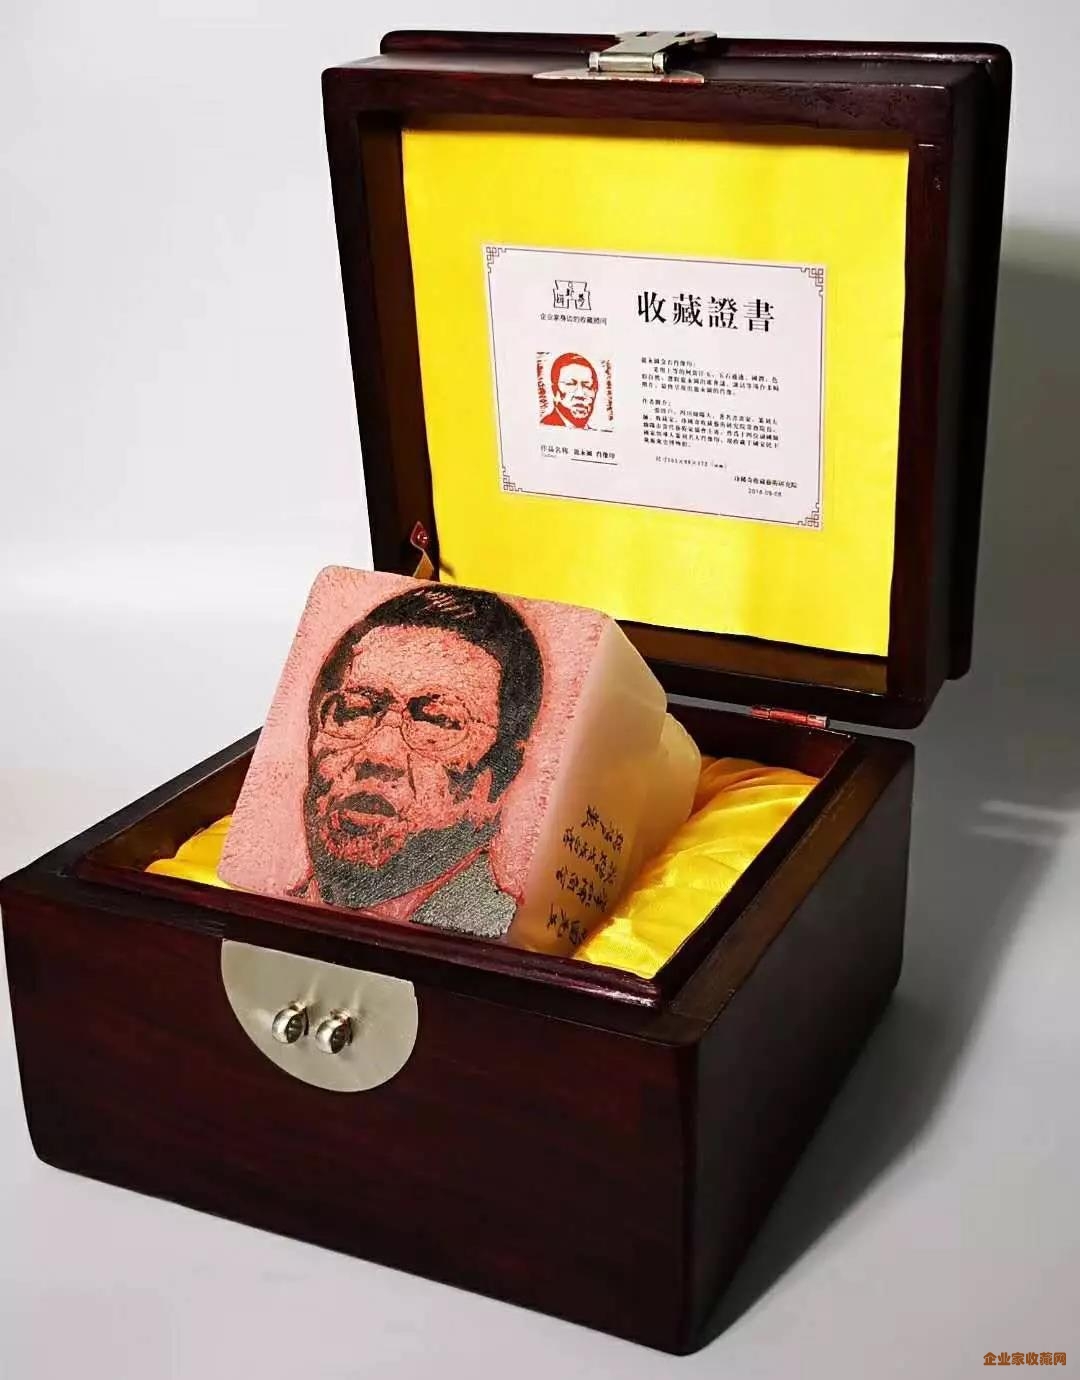 【民企盛典】珍稀奇董事长郭晓林赠予潘基文、龙永图金石肖像印